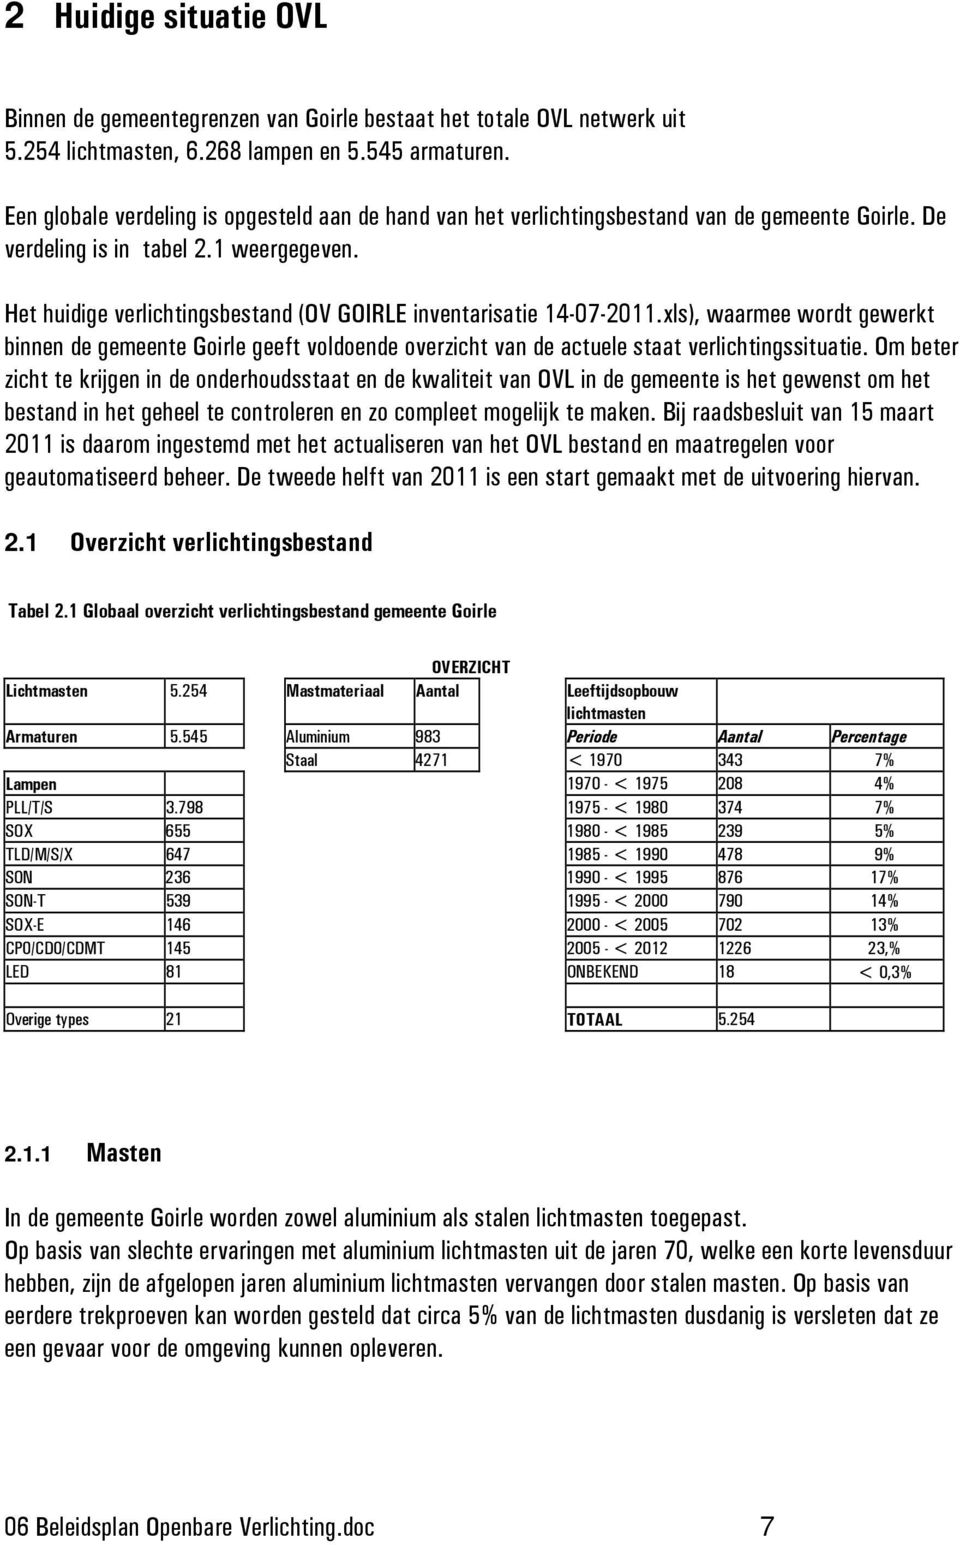 Het huidige verlichtingsbestand (OV GOIRLE inventarisatie 14-07-2011.xls), waarmee wordt gewerkt binnen de gemeente Goirle geeft voldoende overzicht van de actuele staat verlichtingssituatie.